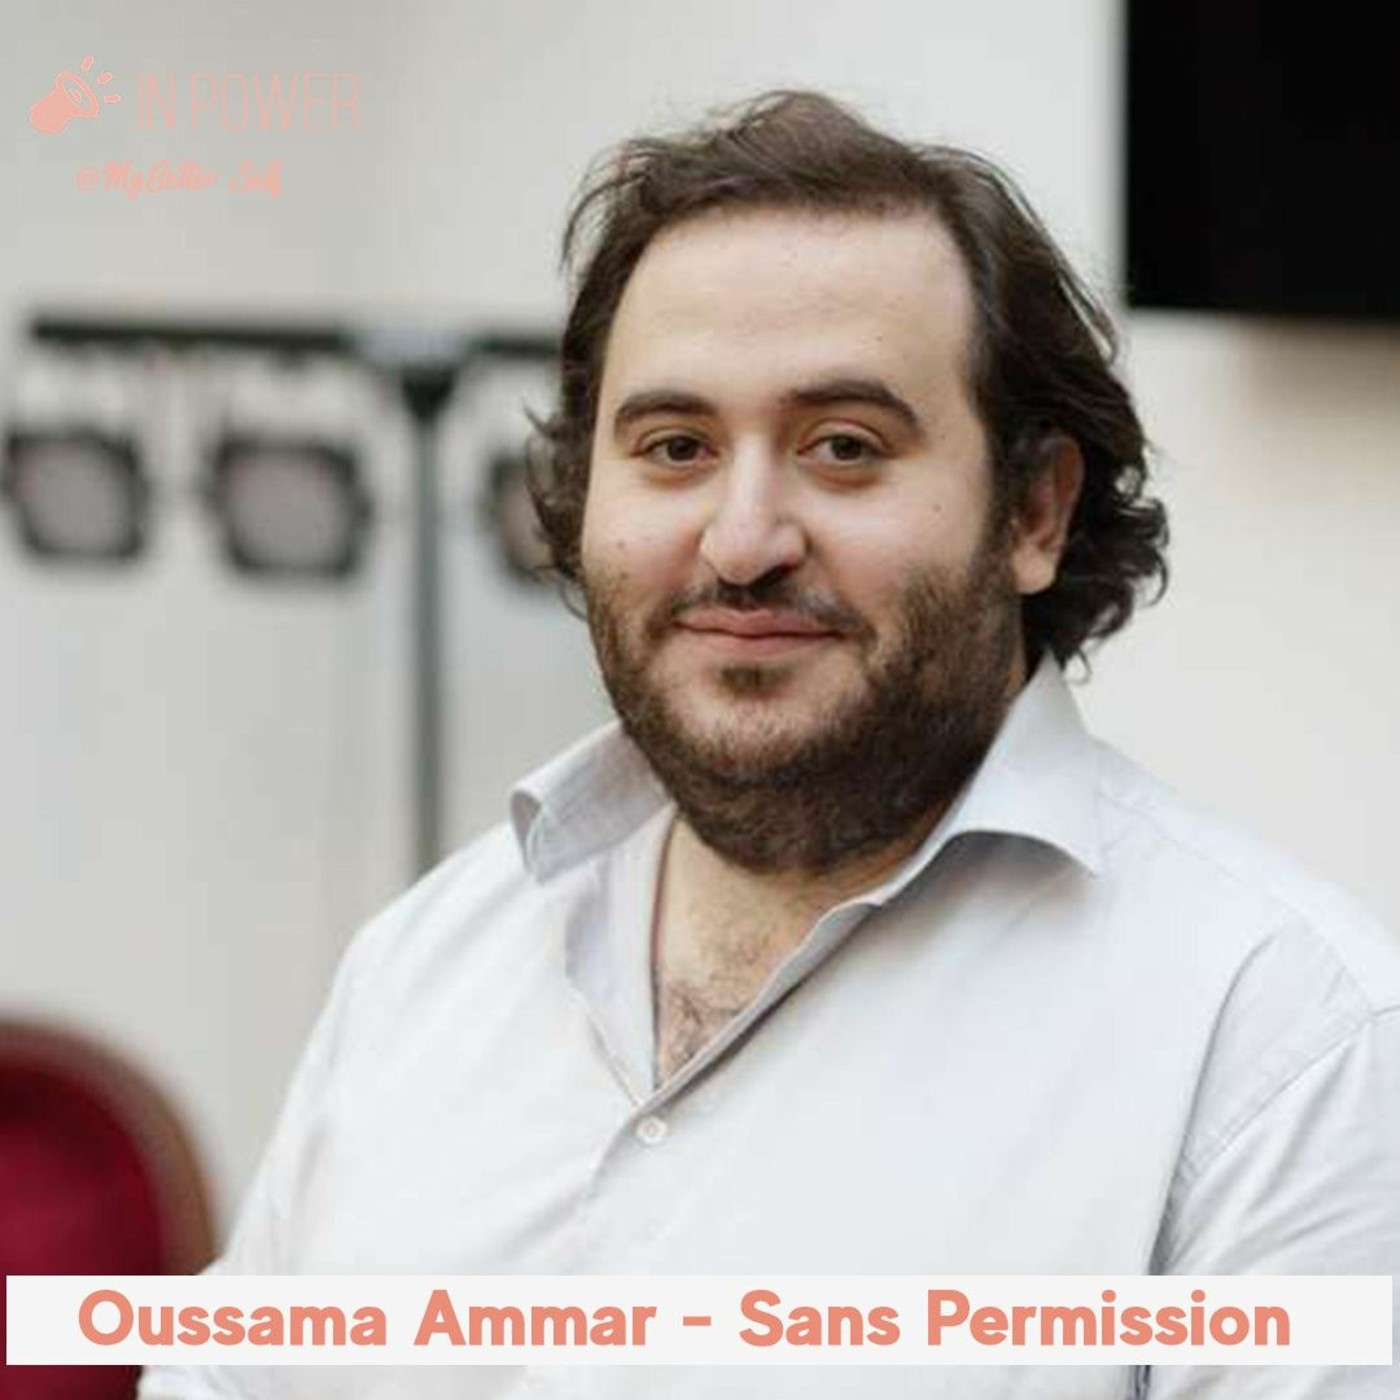 Oussama Ammar - Sans Permission